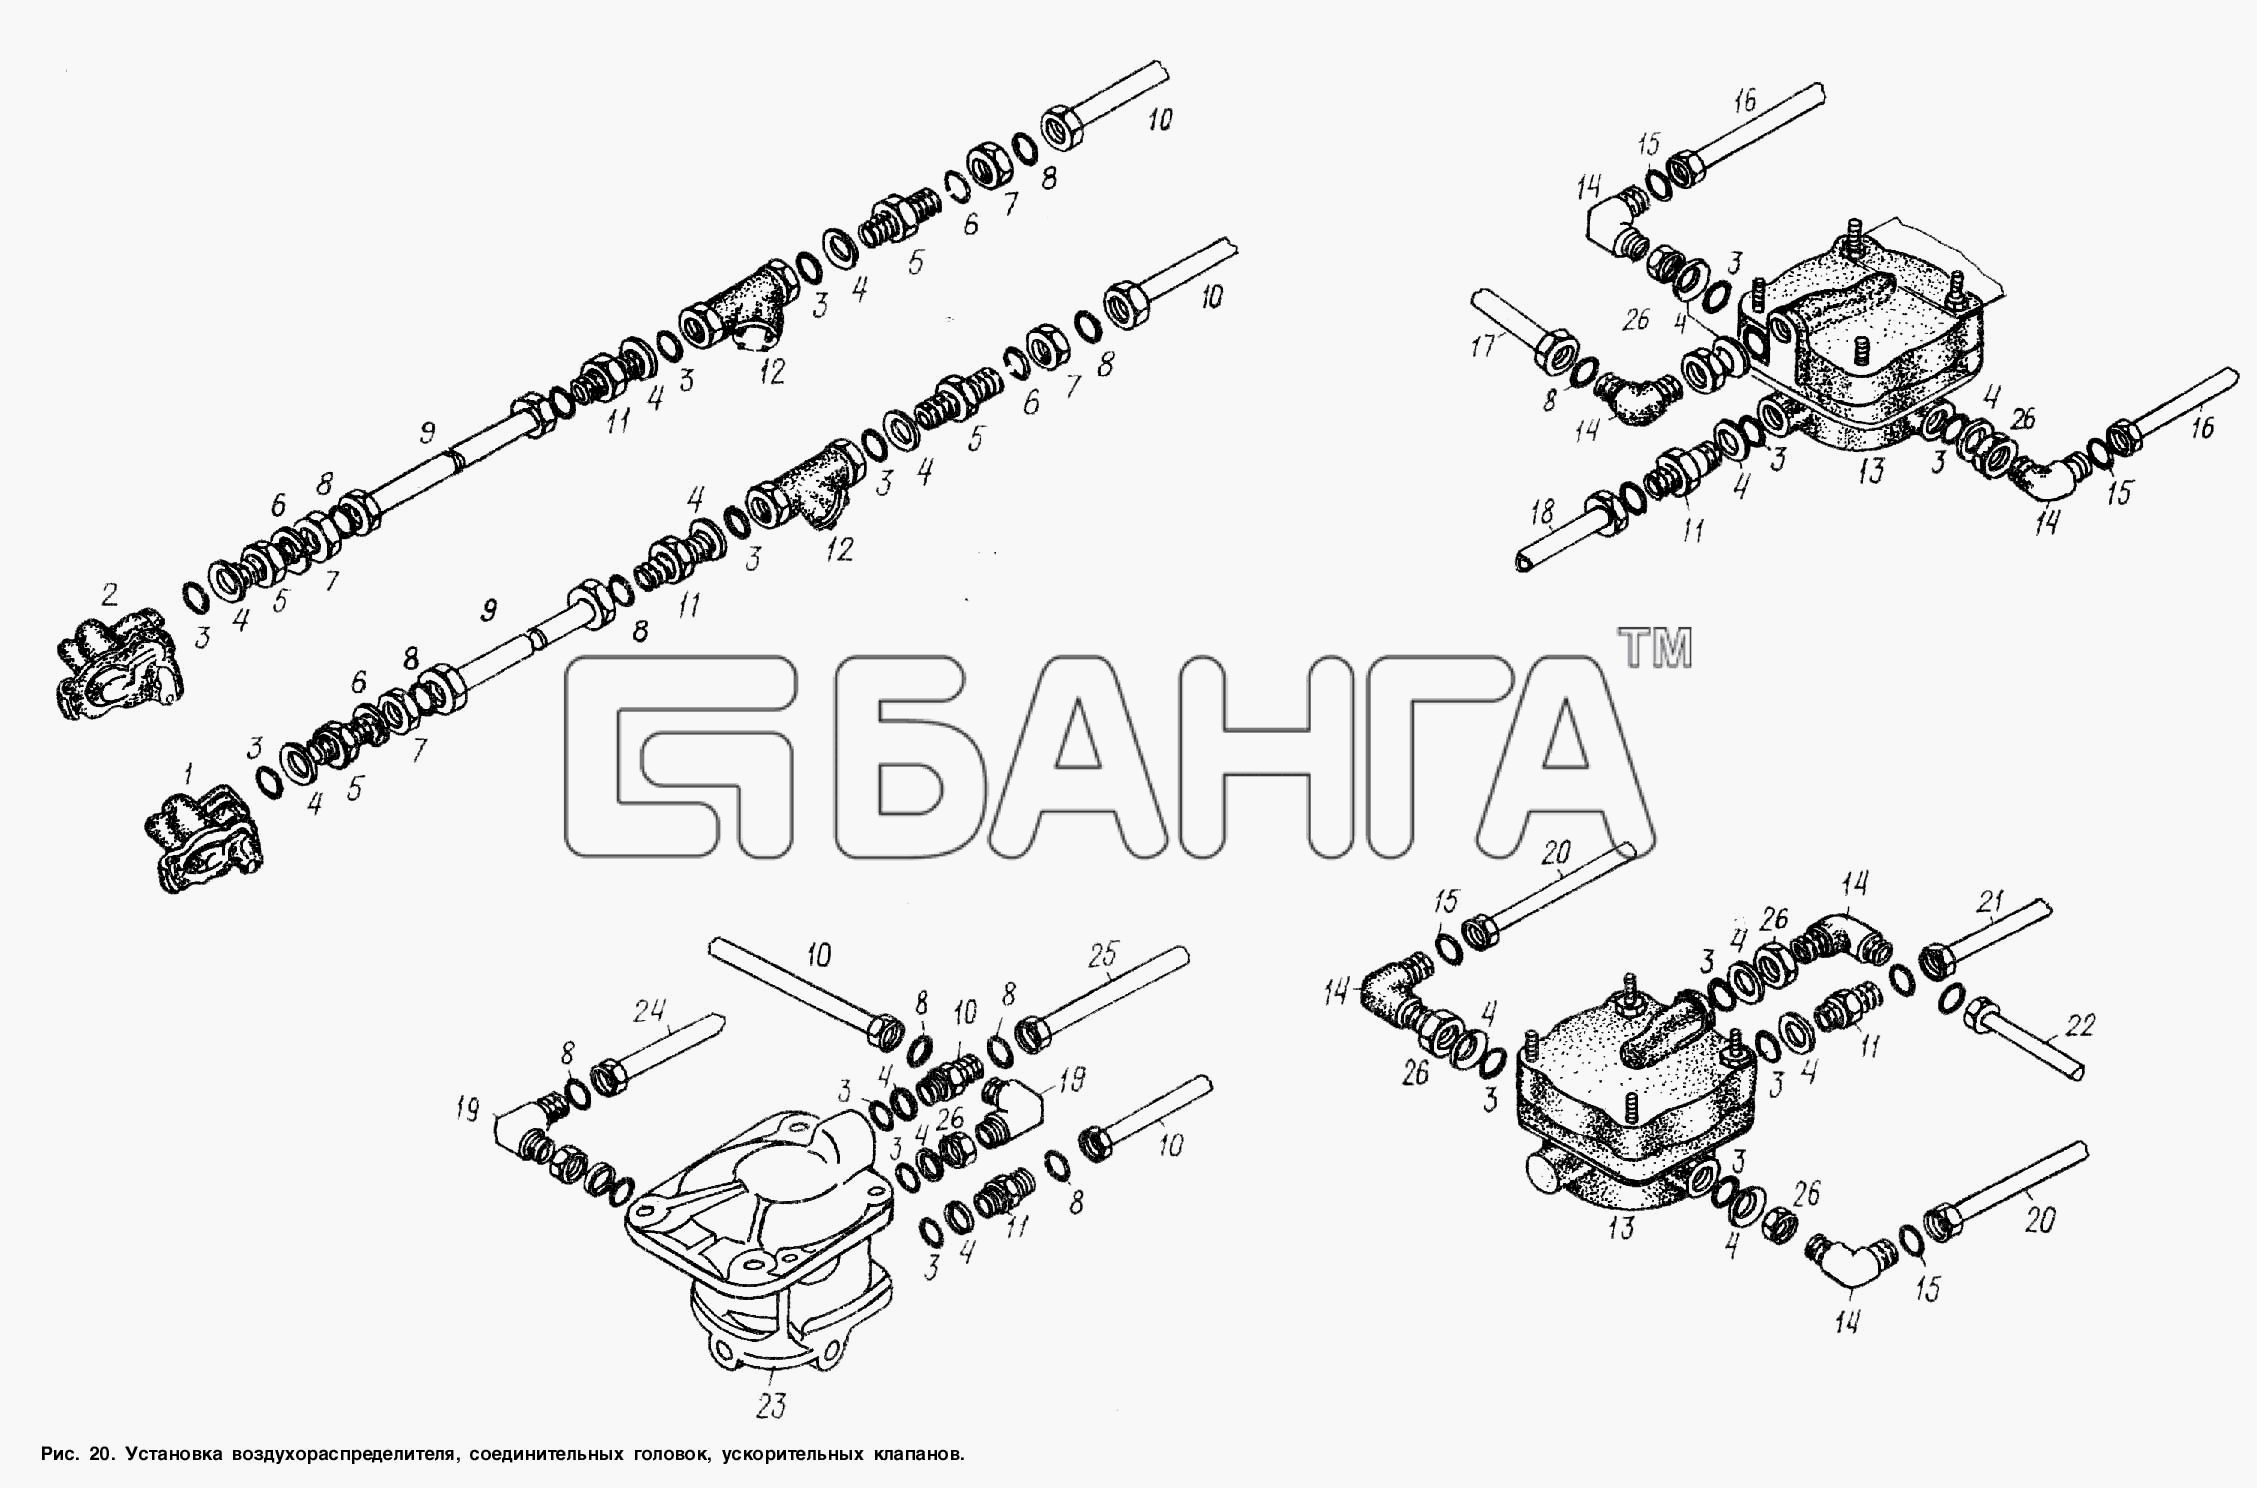 МАЗ МАЗ-93866 Схема Установка воздухораспределителя banga.ua